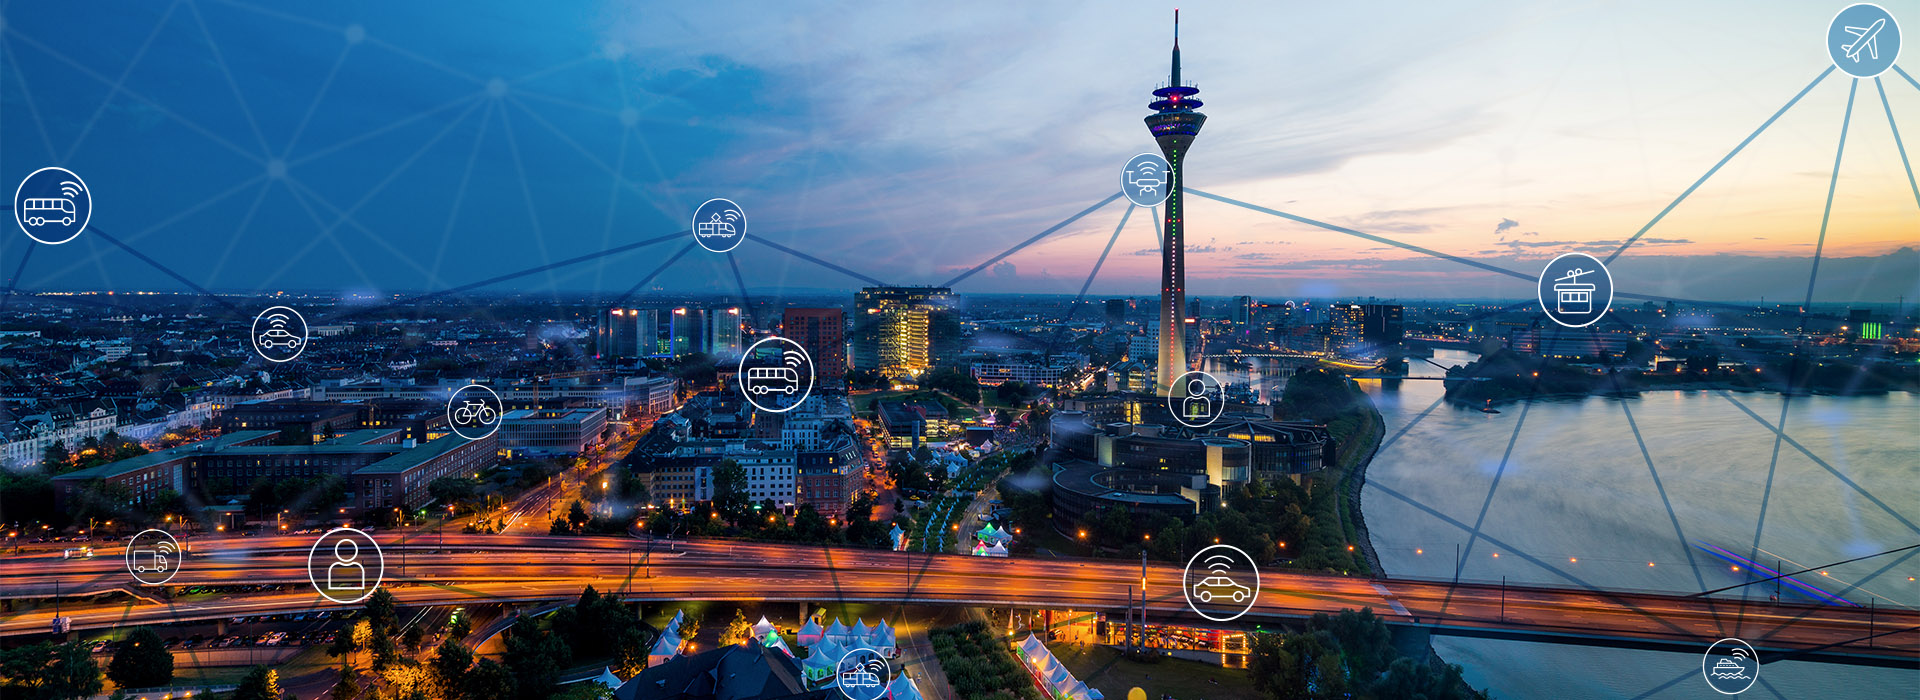 Skyline von Düsseldorf bei Nacht mit einem Netz aus Verbindungen